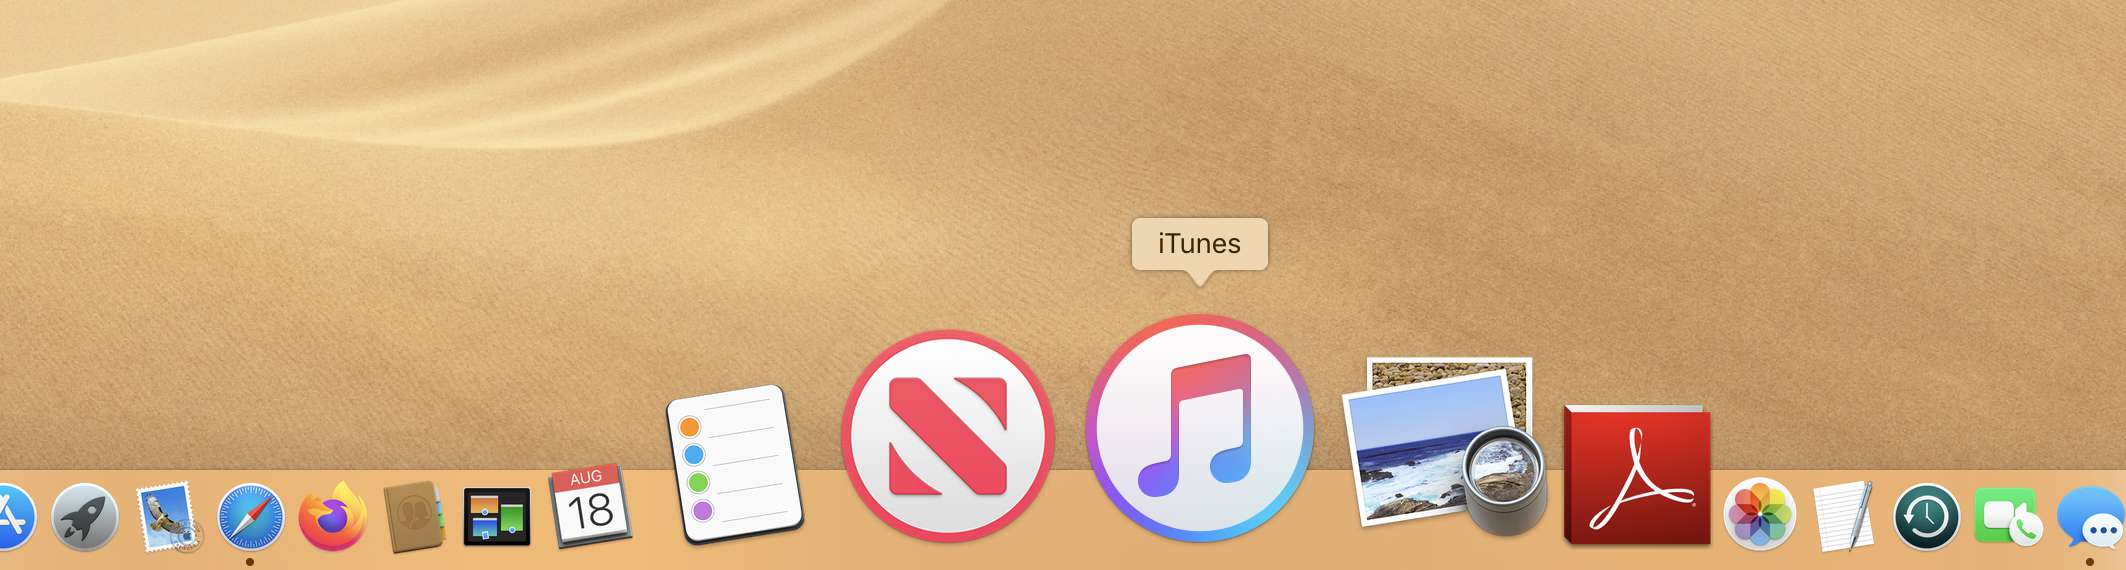 O Mac Dock com iTunes selecionado